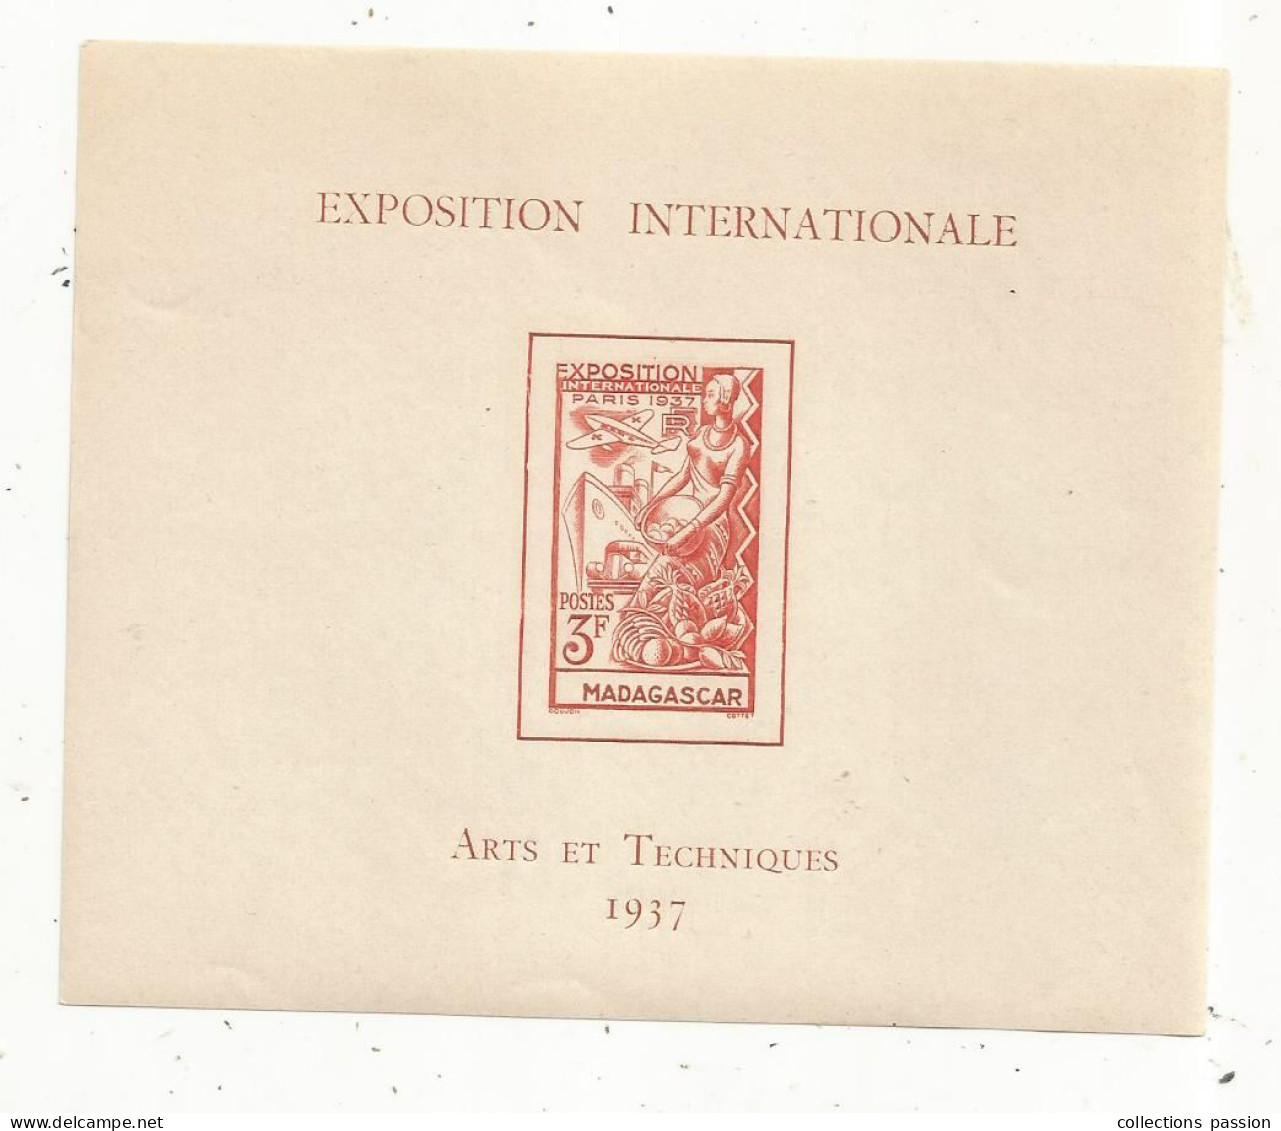 Exposition Internationale , ARTS ET TECHNIQUES 1937 , MADAGASCAR ,3 F - Storia Postale